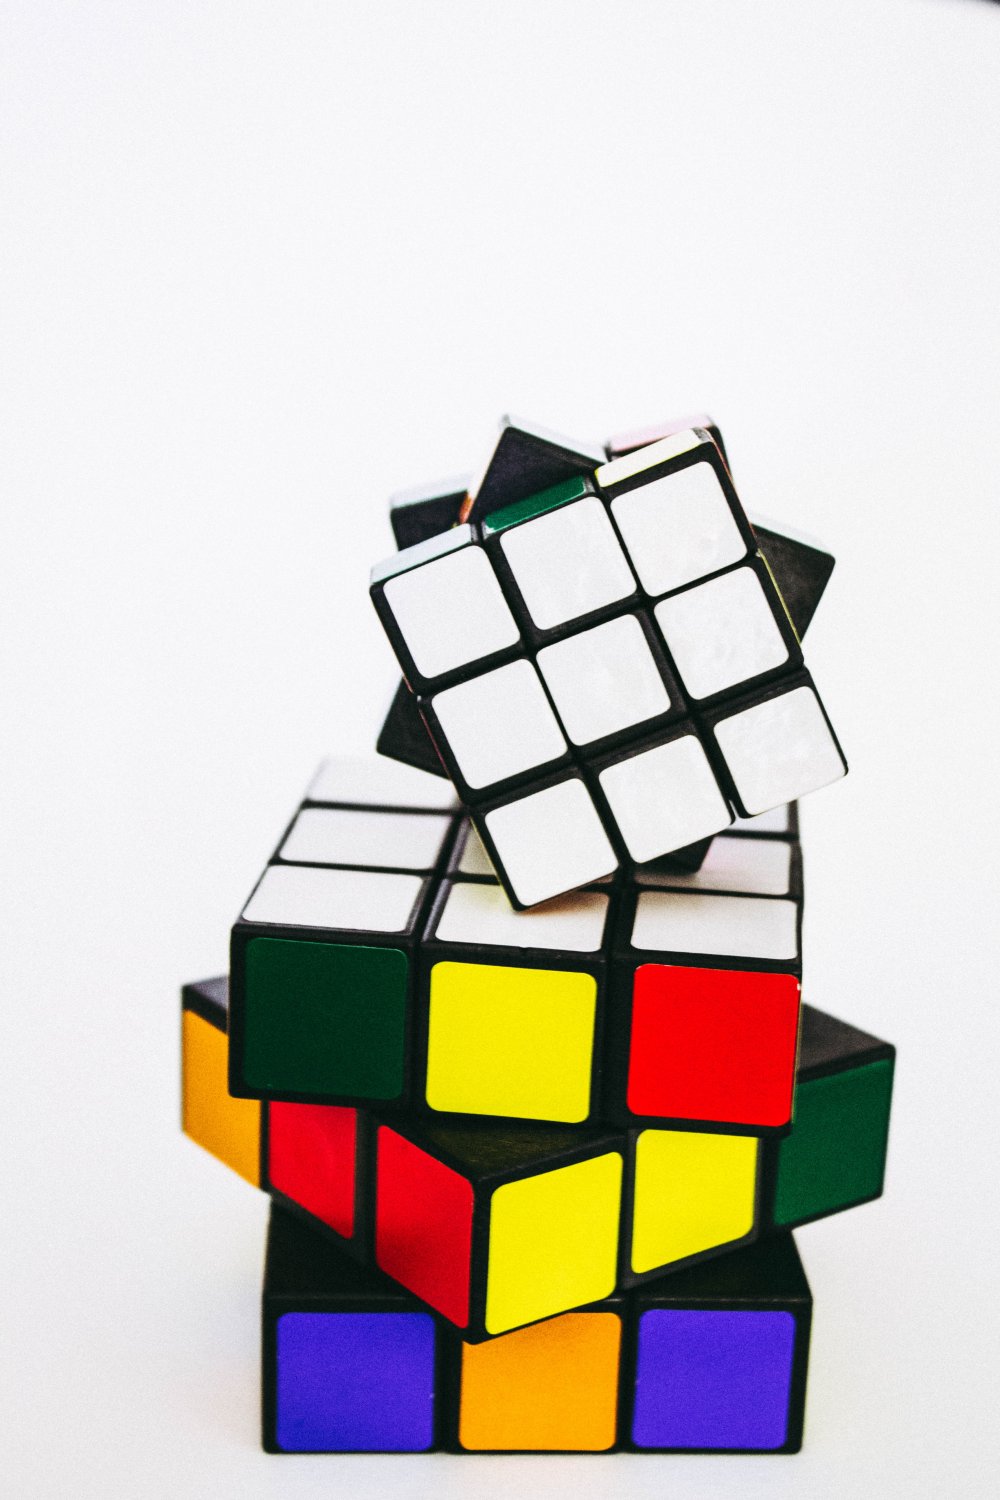 Rubiks kub har flera spännande efterföljare